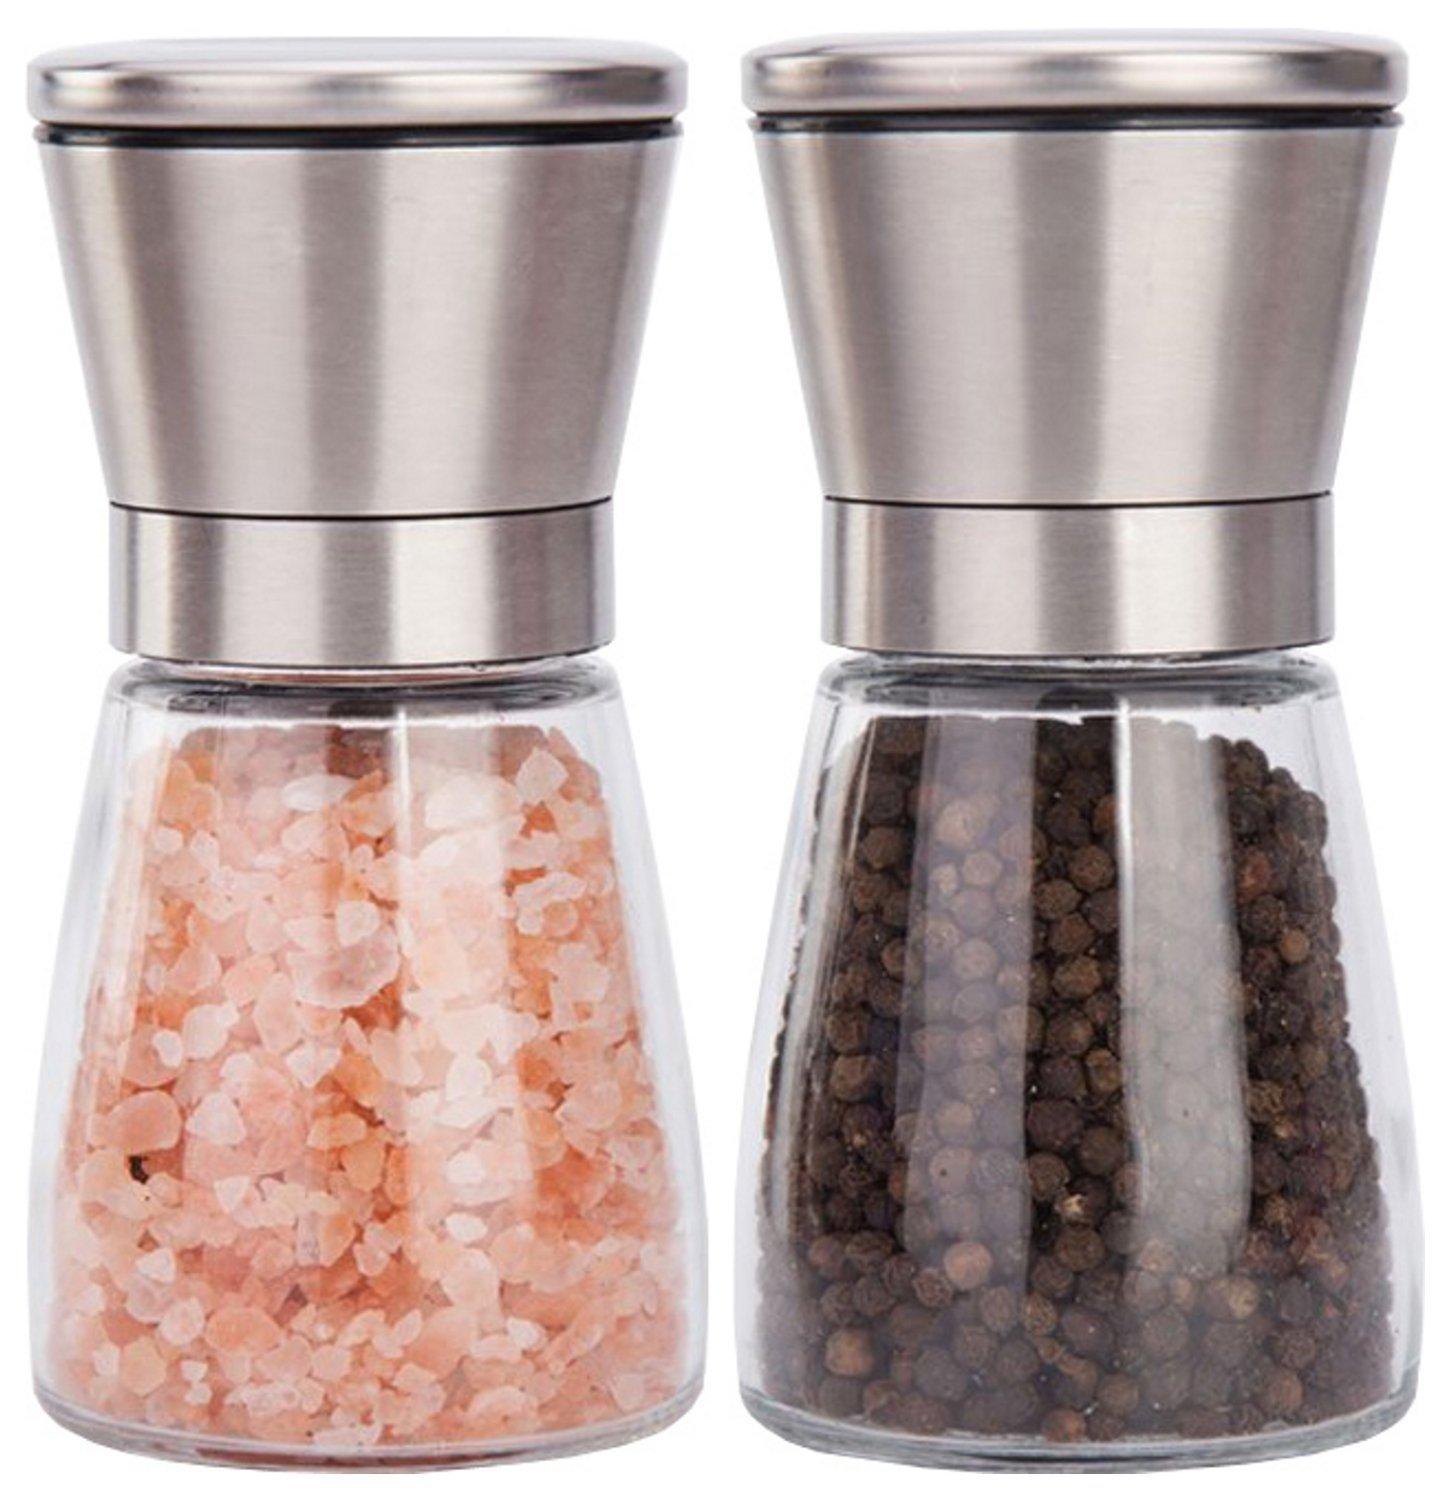 2018 Salt And Pepper Grinder Set Best Salt Pepper Shaker Grinder Red ...